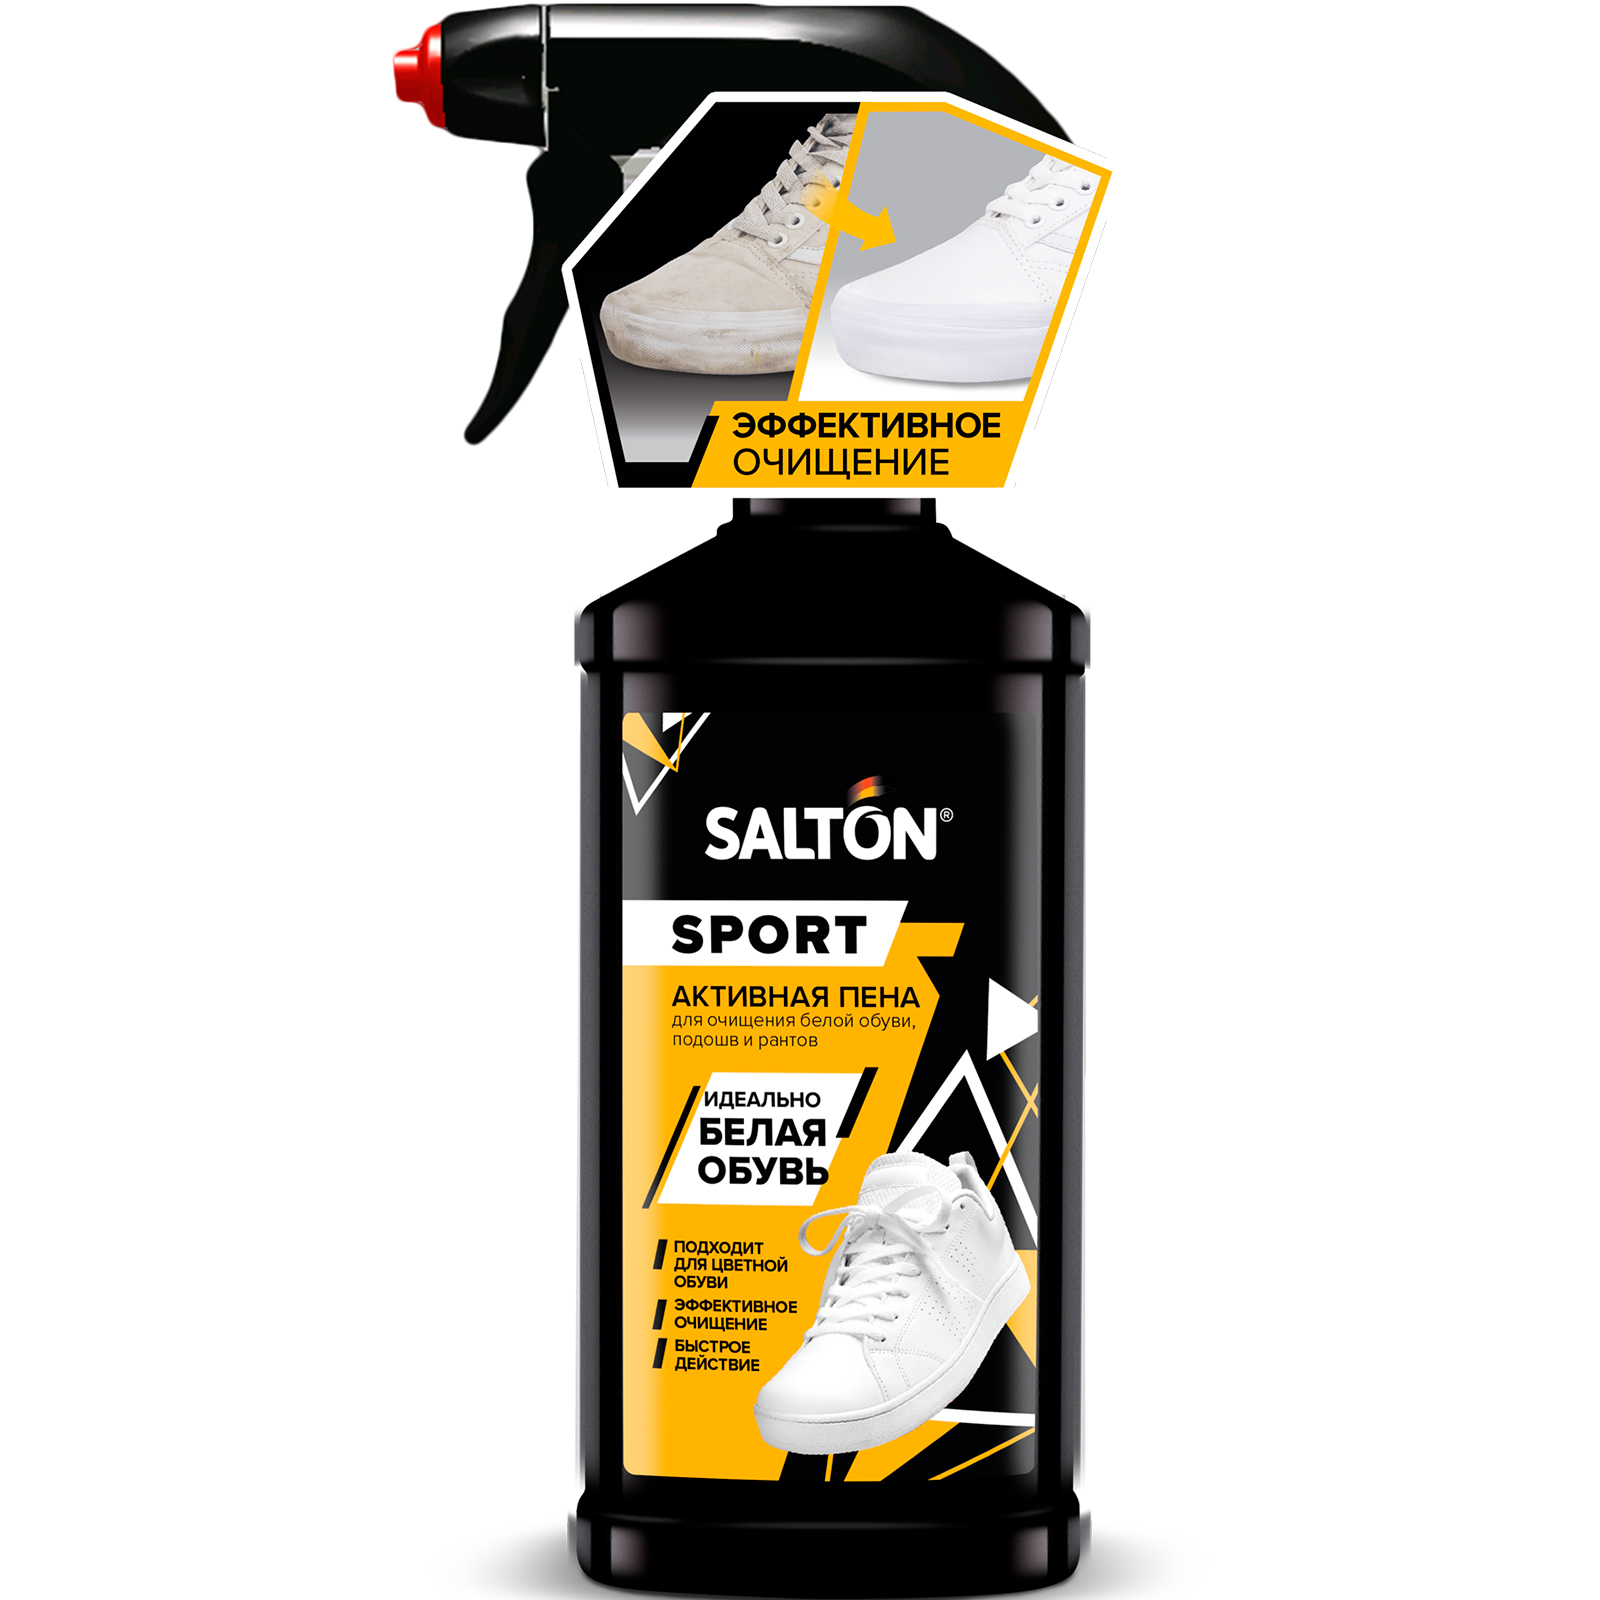 Очиститель Salton Sport для спортивной обуви, боковин и подошв Активная пена, 200 мл